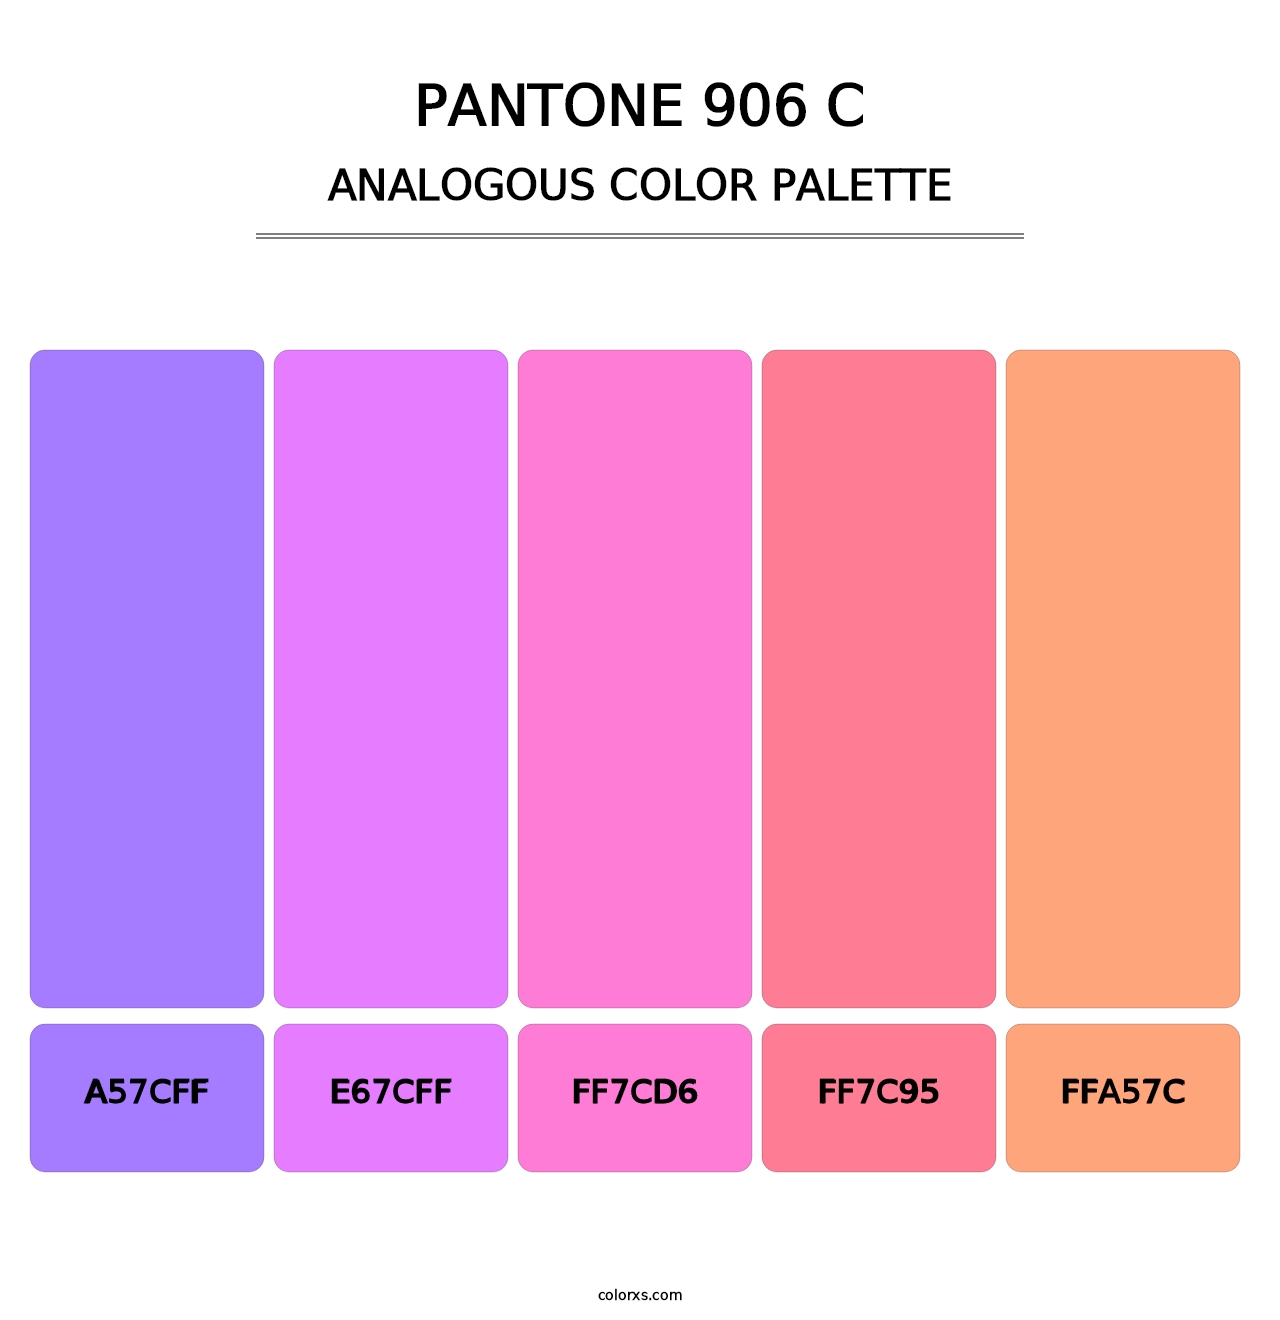 PANTONE 906 C - Analogous Color Palette